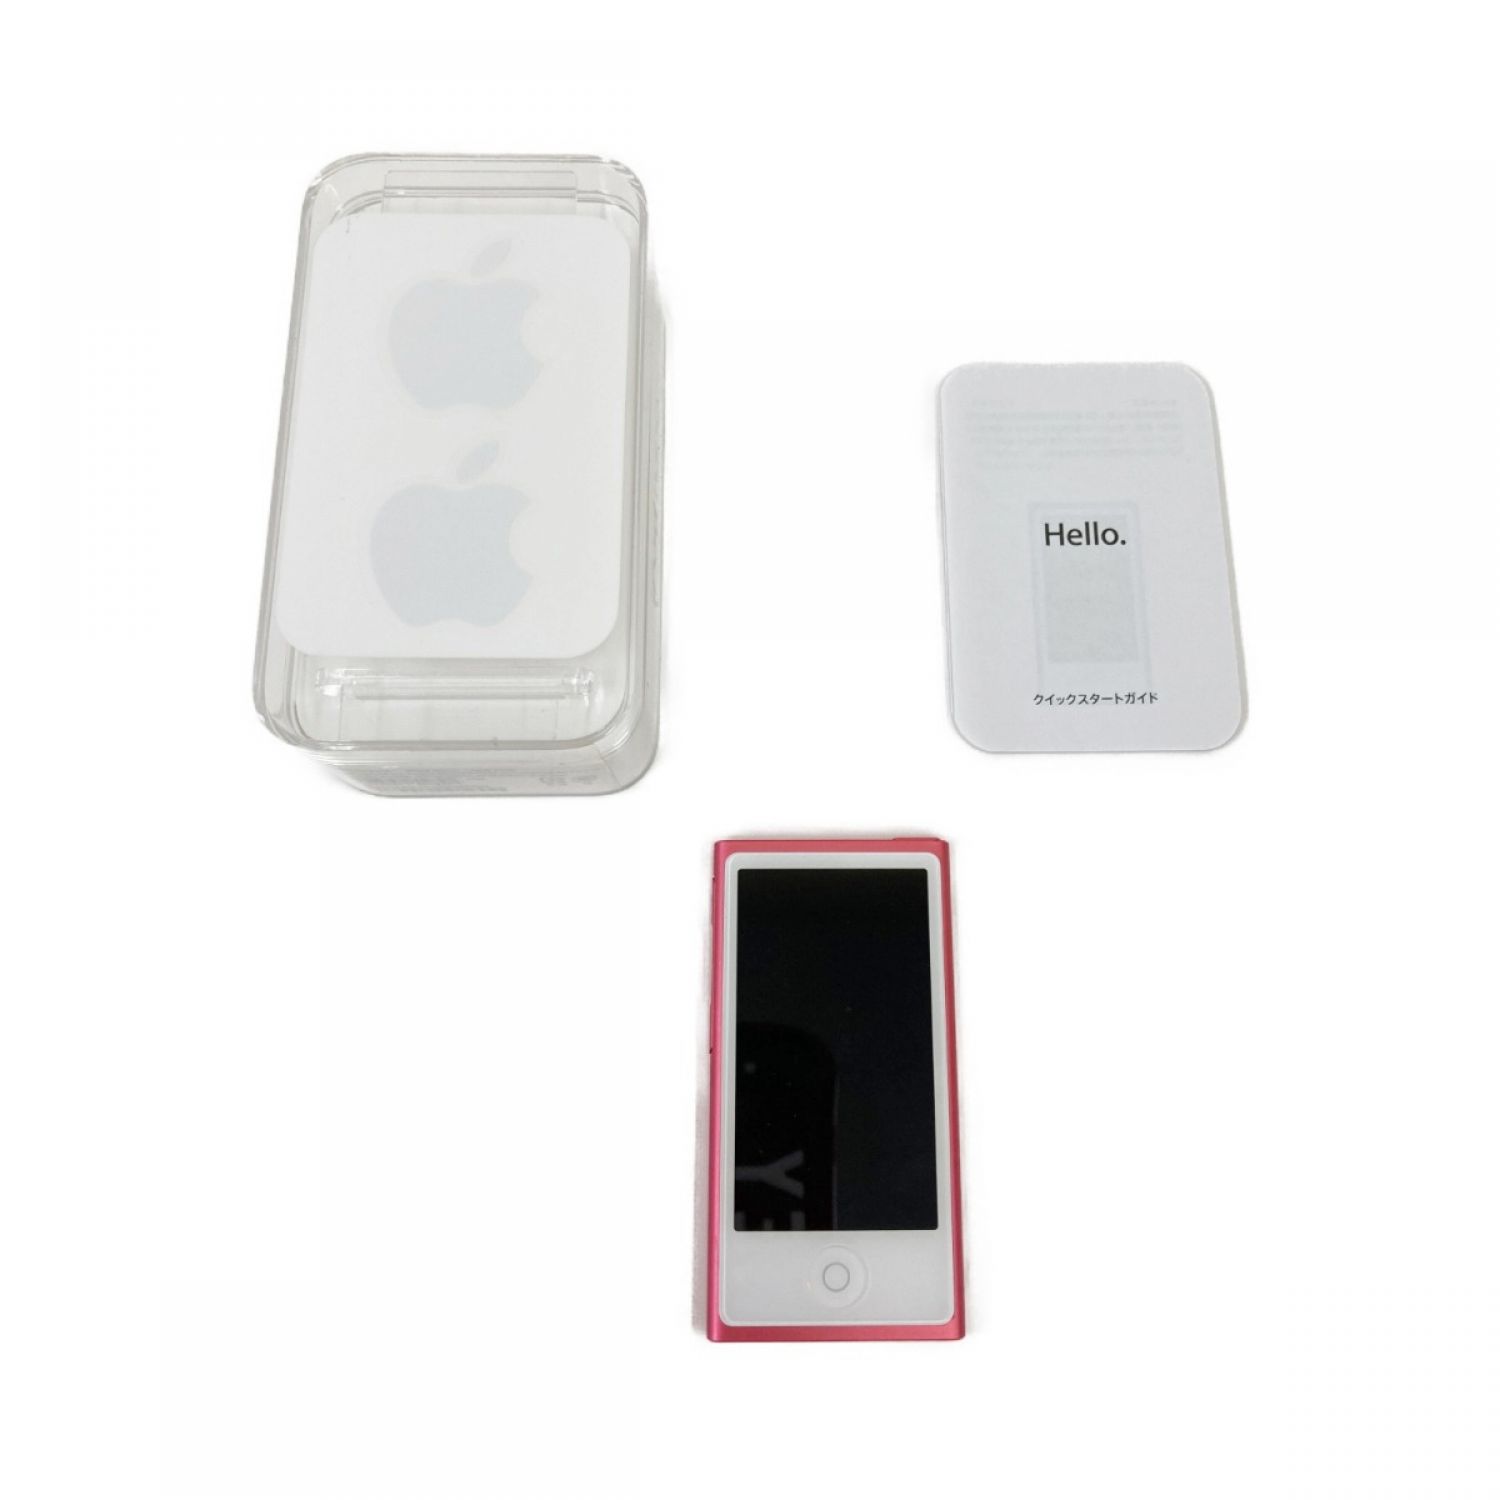 中古】 Apple アップル iPod nano 16GB デジタルオーディオプレーヤー